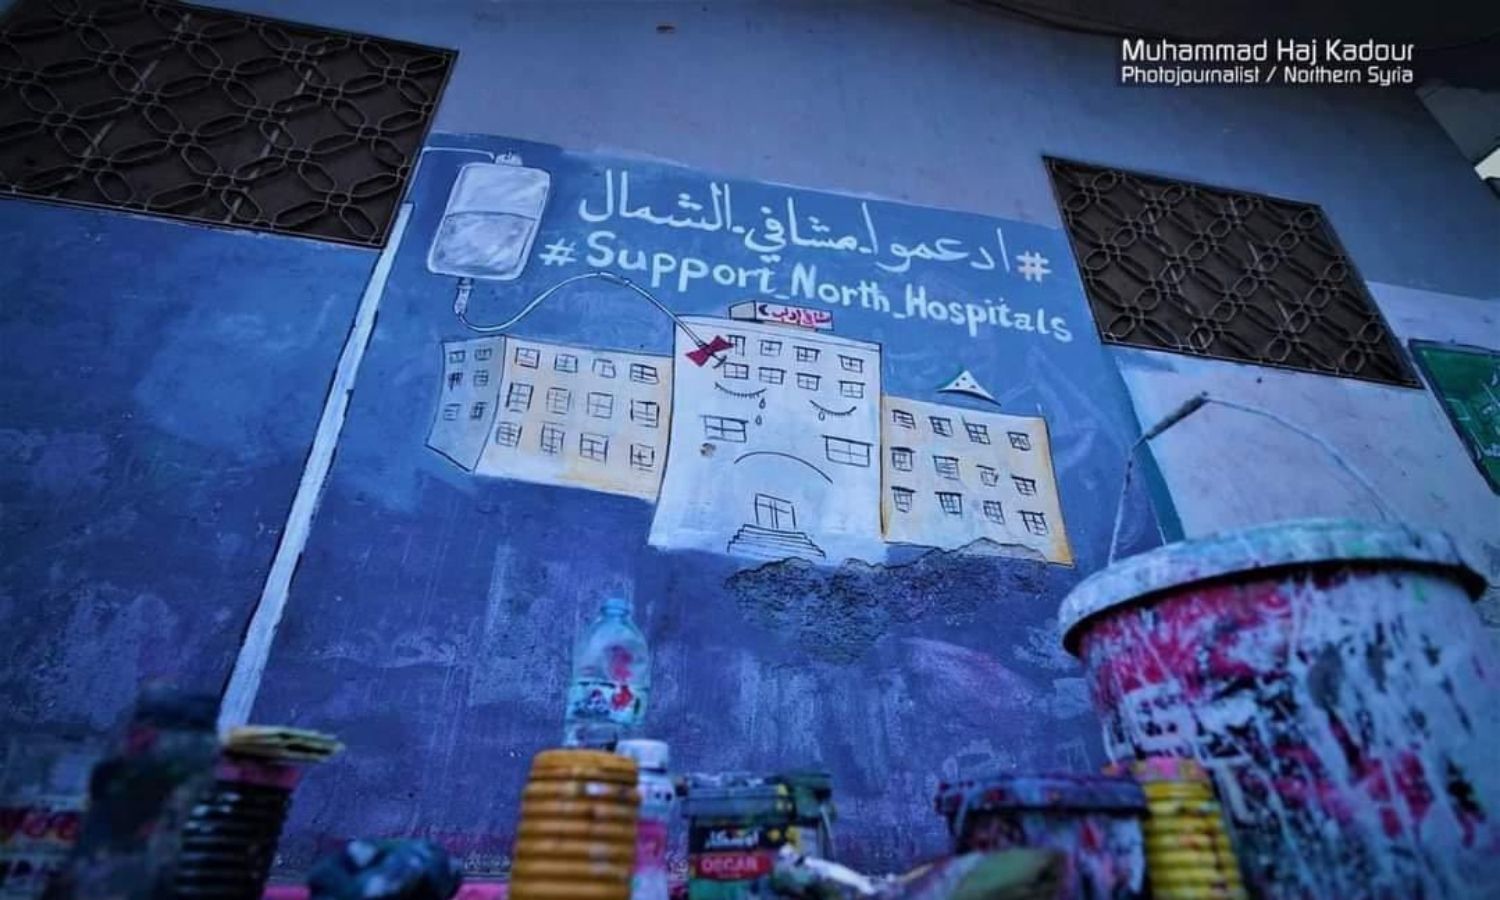 جدارية حول موضوع حملة "ادعموا مشافي الشمال" (المصور محمد حاج قدور)